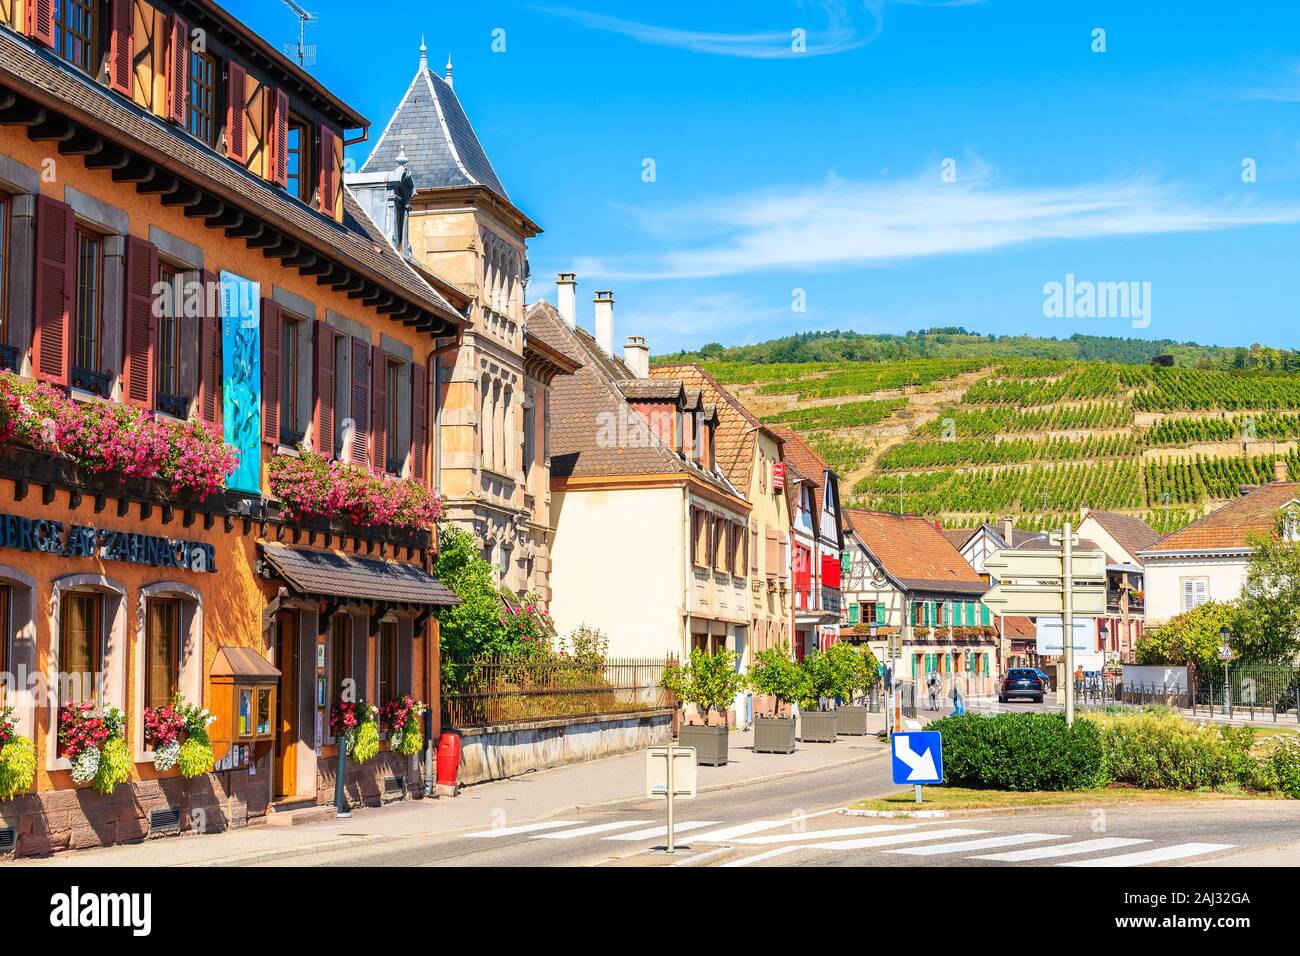 RIBEAUVILLE, Francia - 18 Sep, 2019: hermosas casas históricas en la parte vieja de Ribeauville village está situado en la famosa ruta del vino de Alsacia regio Foto de stock